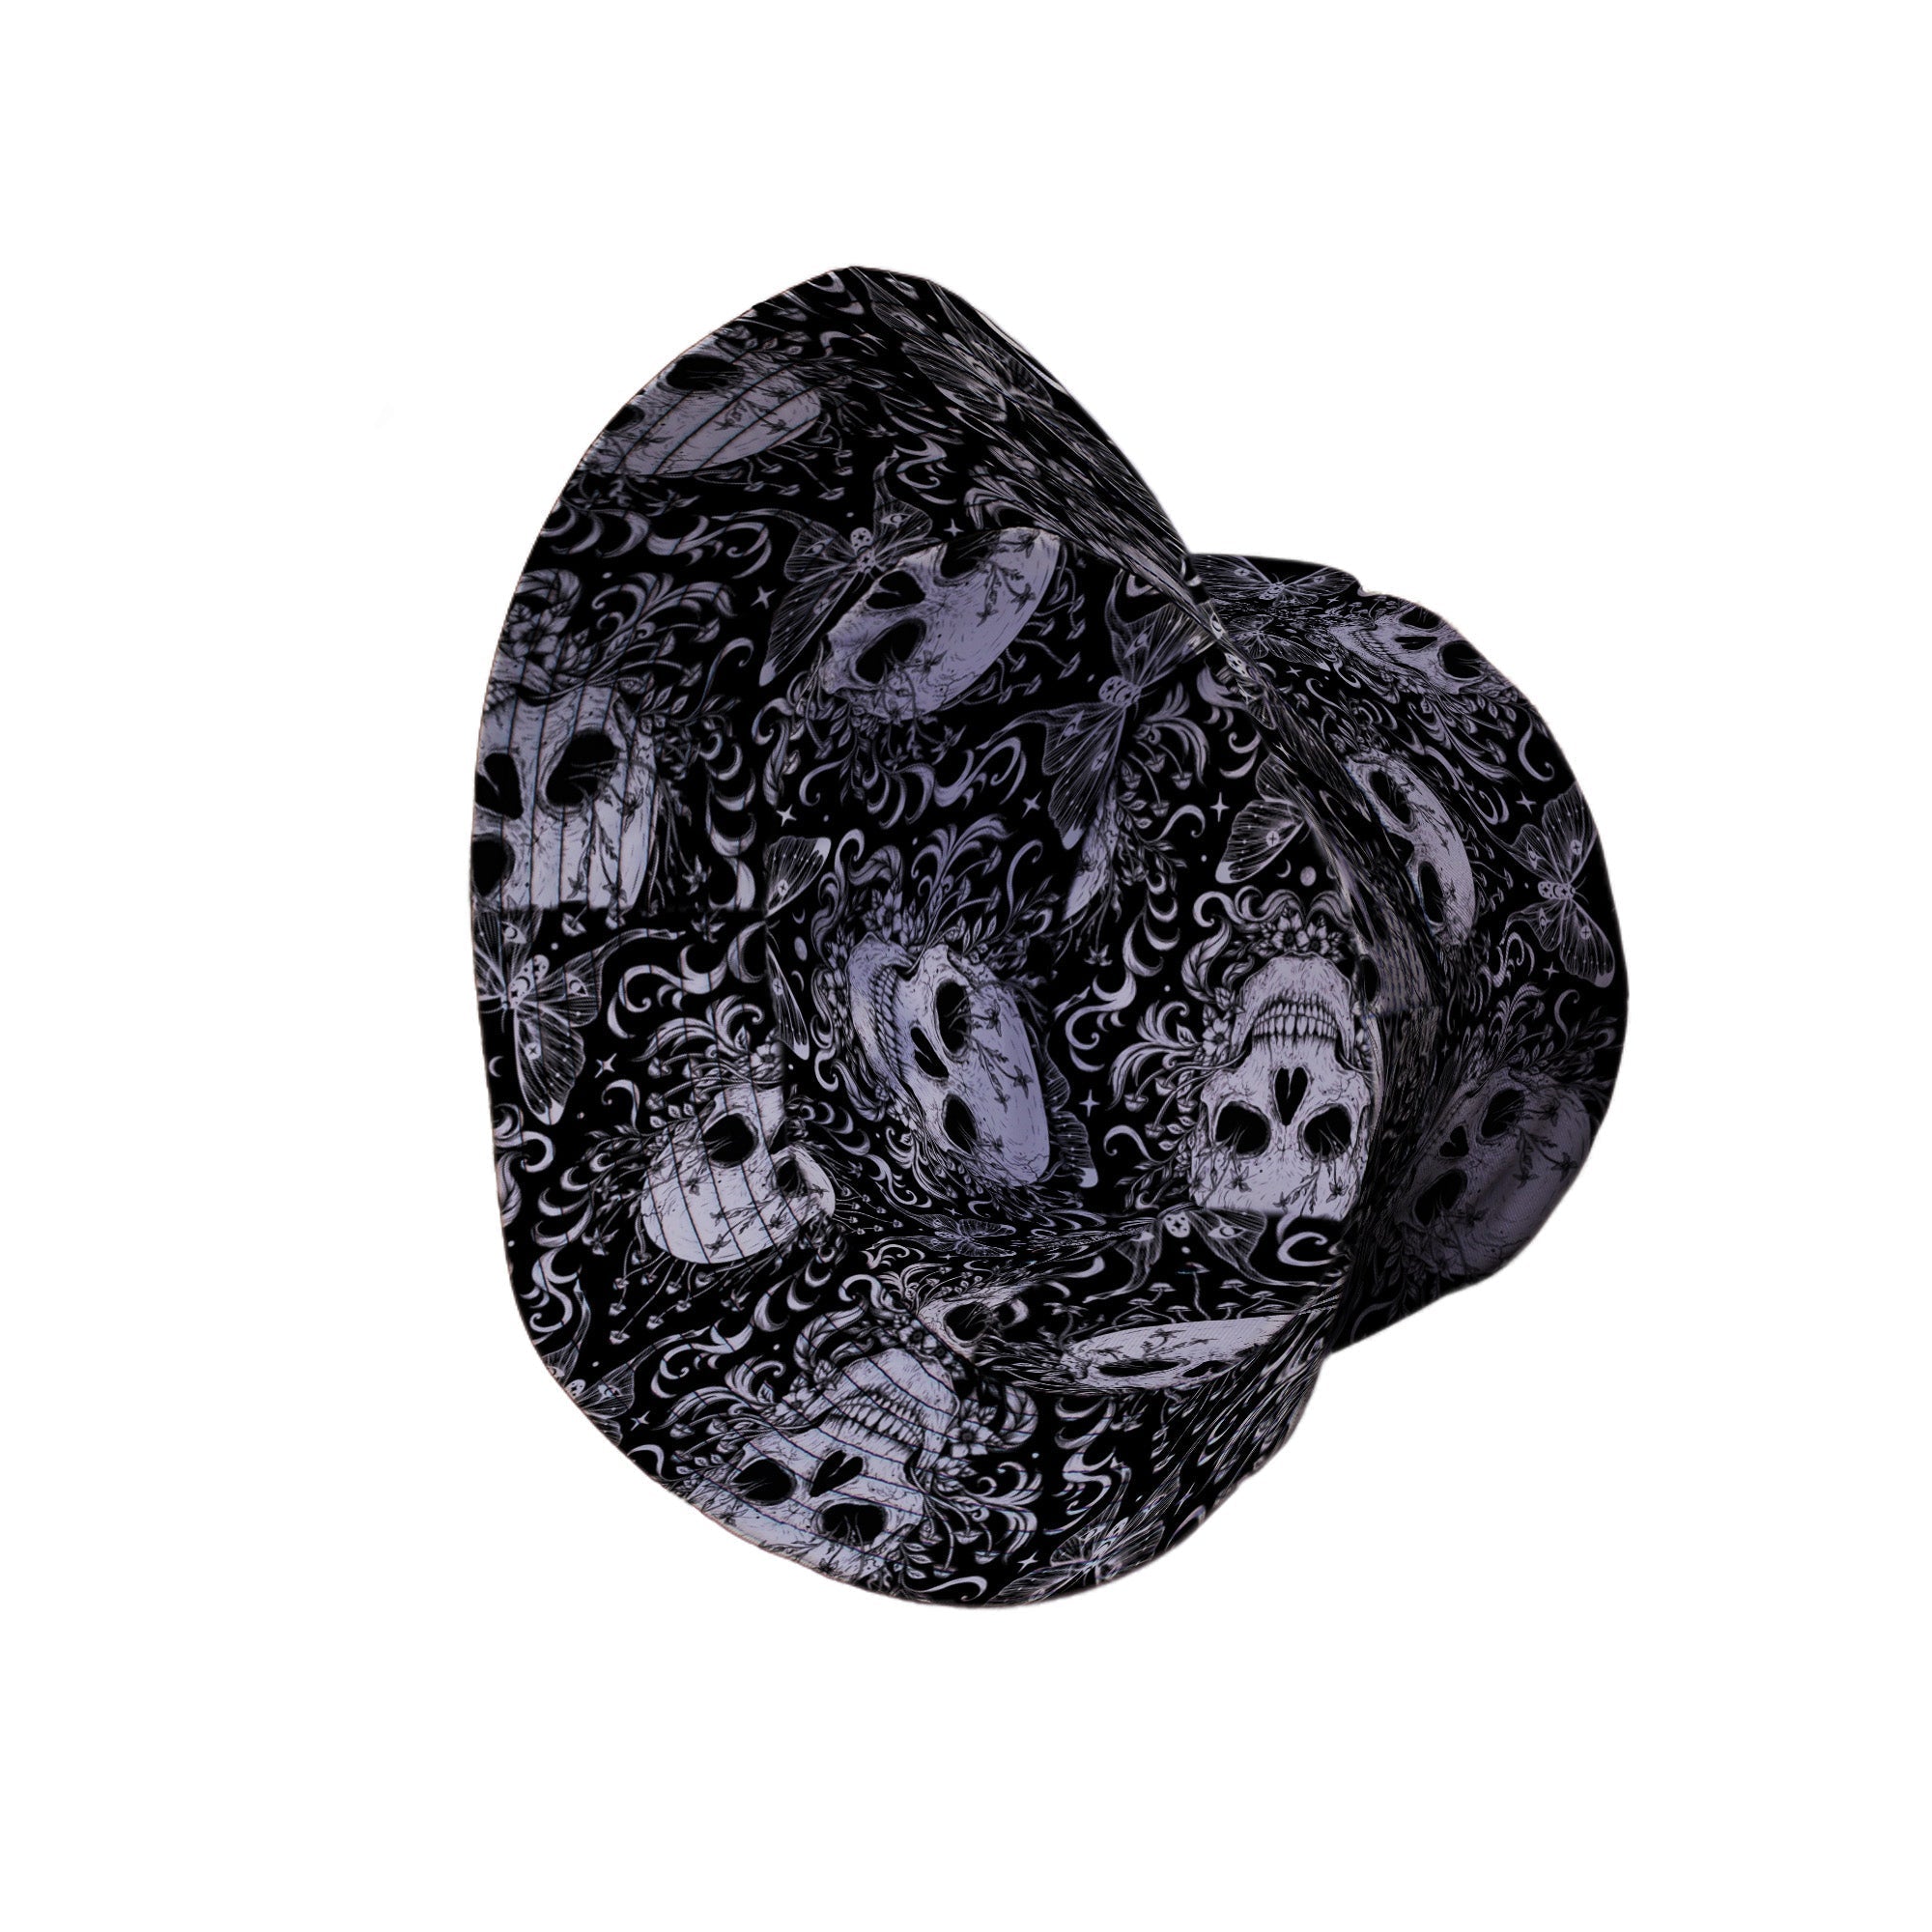 Episodic Skull Black White Bucket Hat - M - Grey Stitching - -